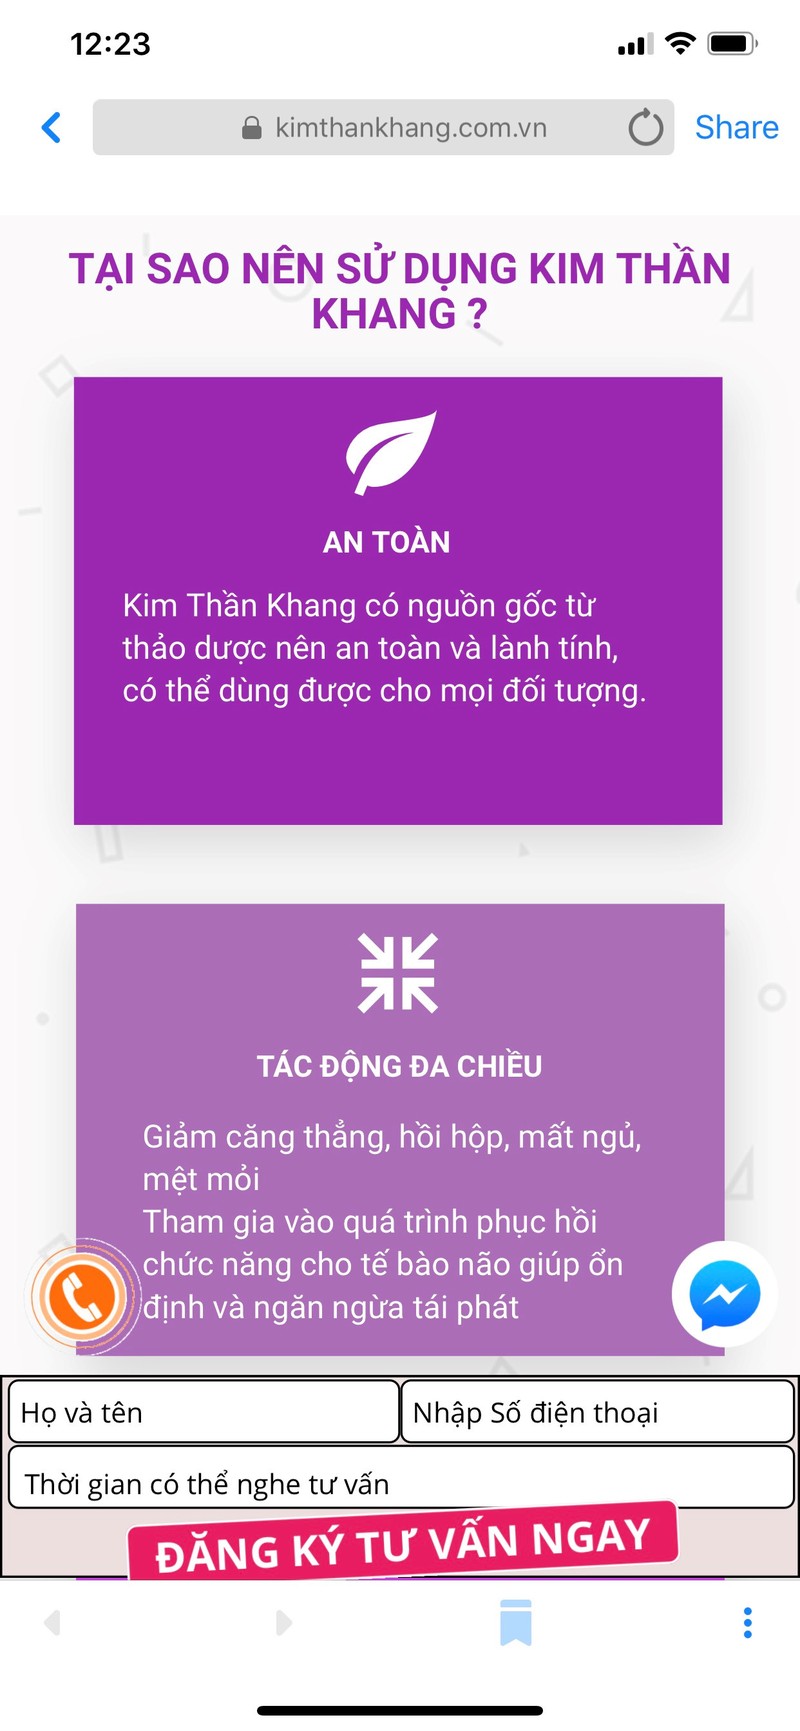 TPCN Kim Than Khang quang cao lap lo nhu thuoc... nen tay chay?-Hinh-2